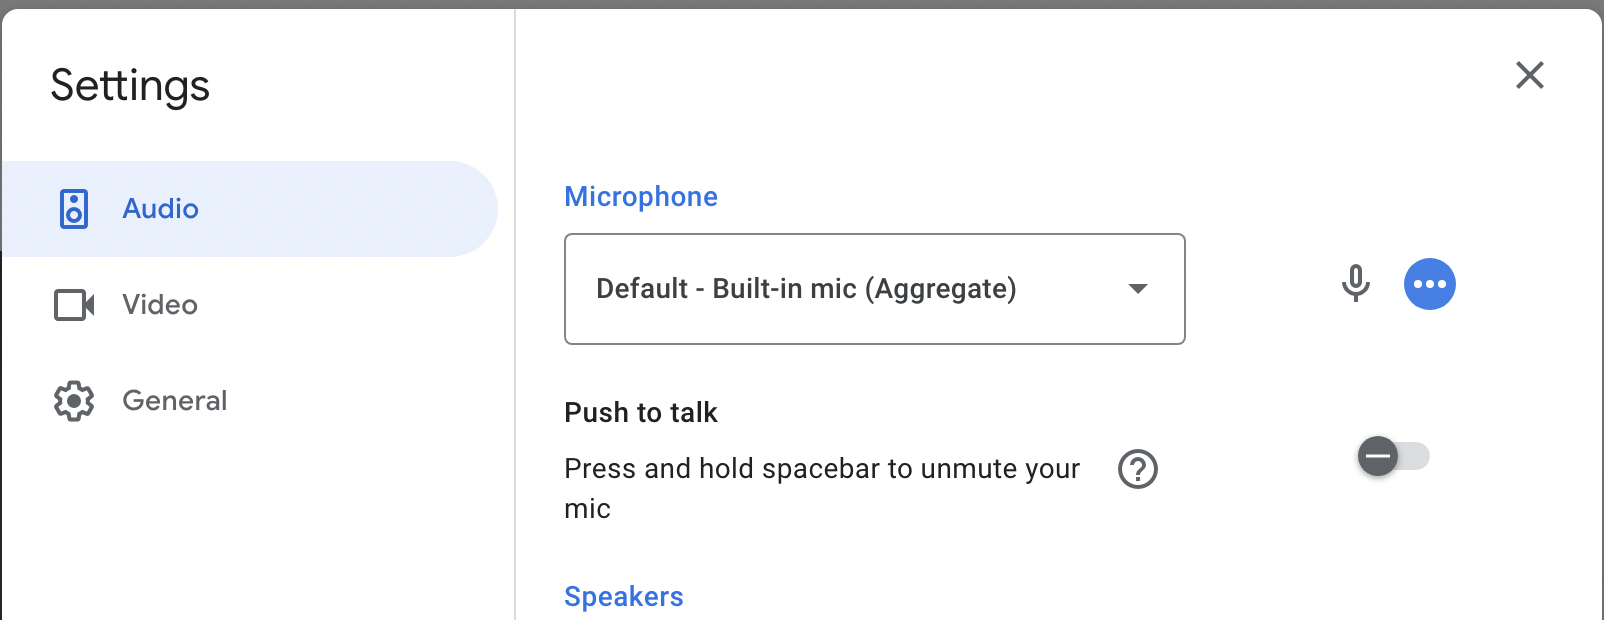 Select Google meet's audio input